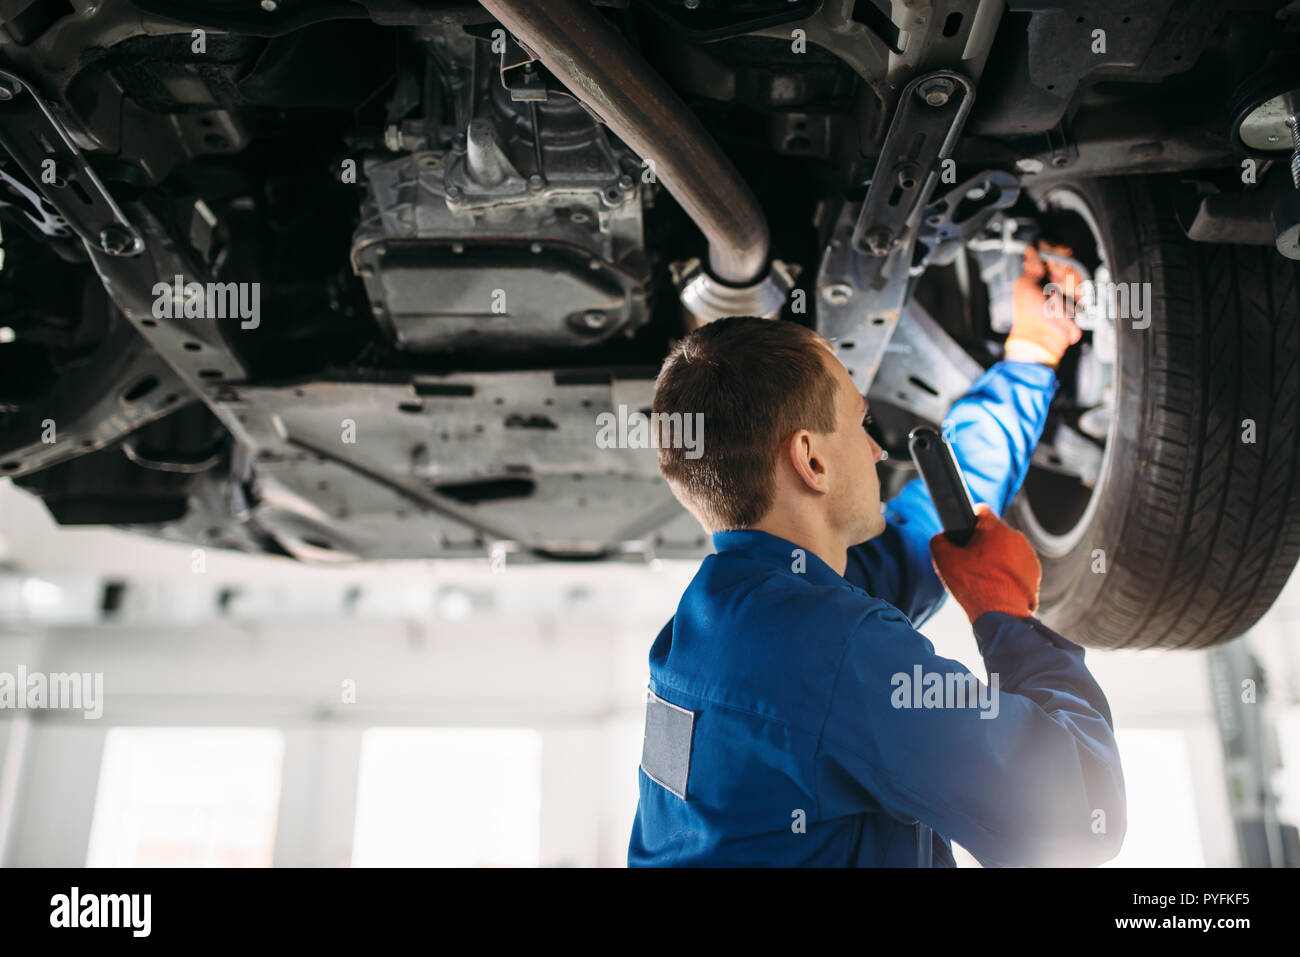 Mechaniker mit Lampe prüft Auto Bremsschläuche, reparieren lassen. Reifen  Service, Wartung des Fahrzeugs Stockfotografie - Alamy